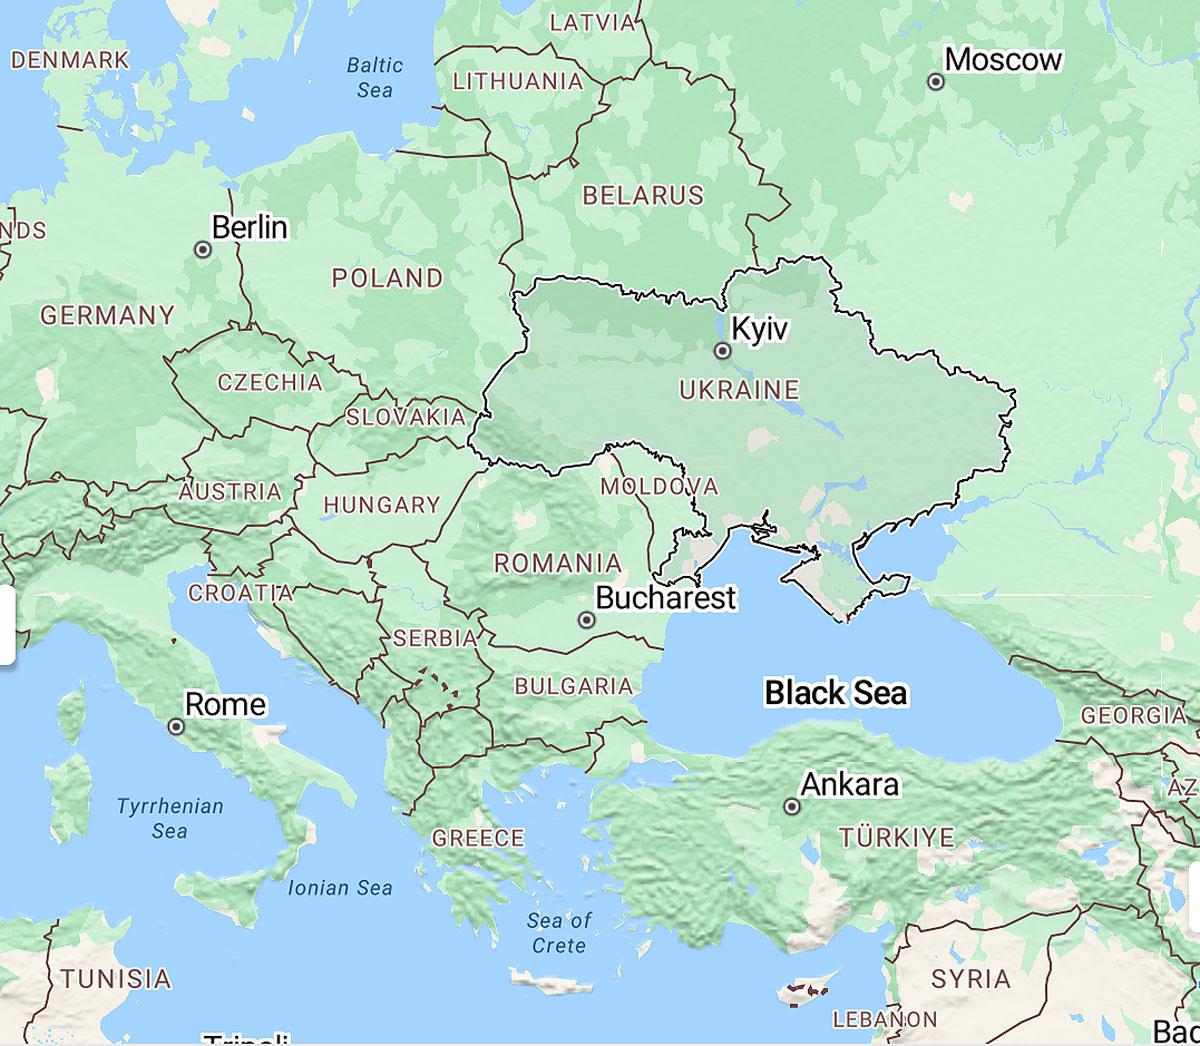 Map of Ukraine, Black Sea, Turkey, East Europs